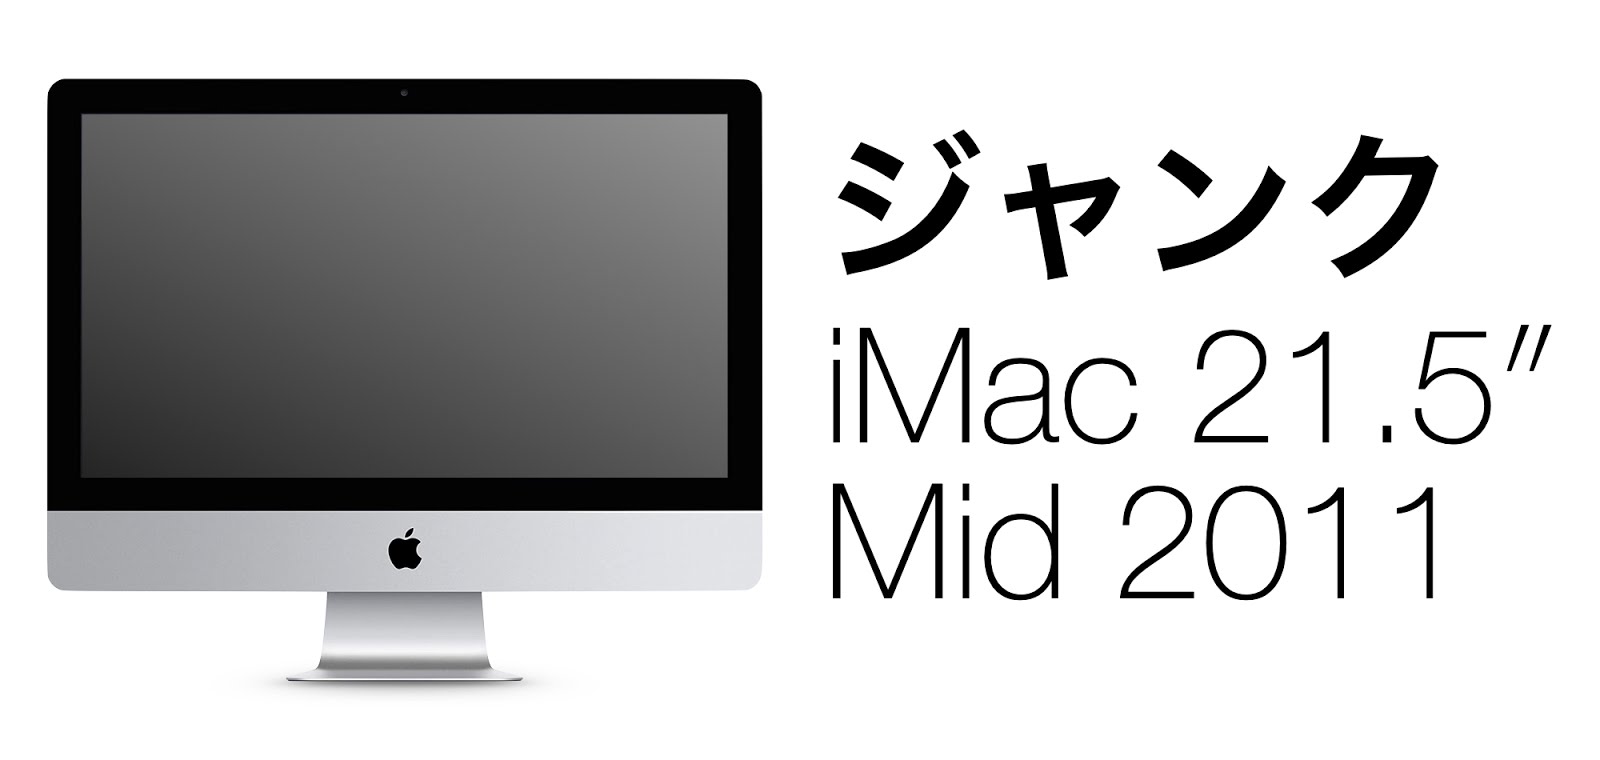 ジャンクの iMac (Mid 2011) を買ったので 動作確認と OS インストール【1】